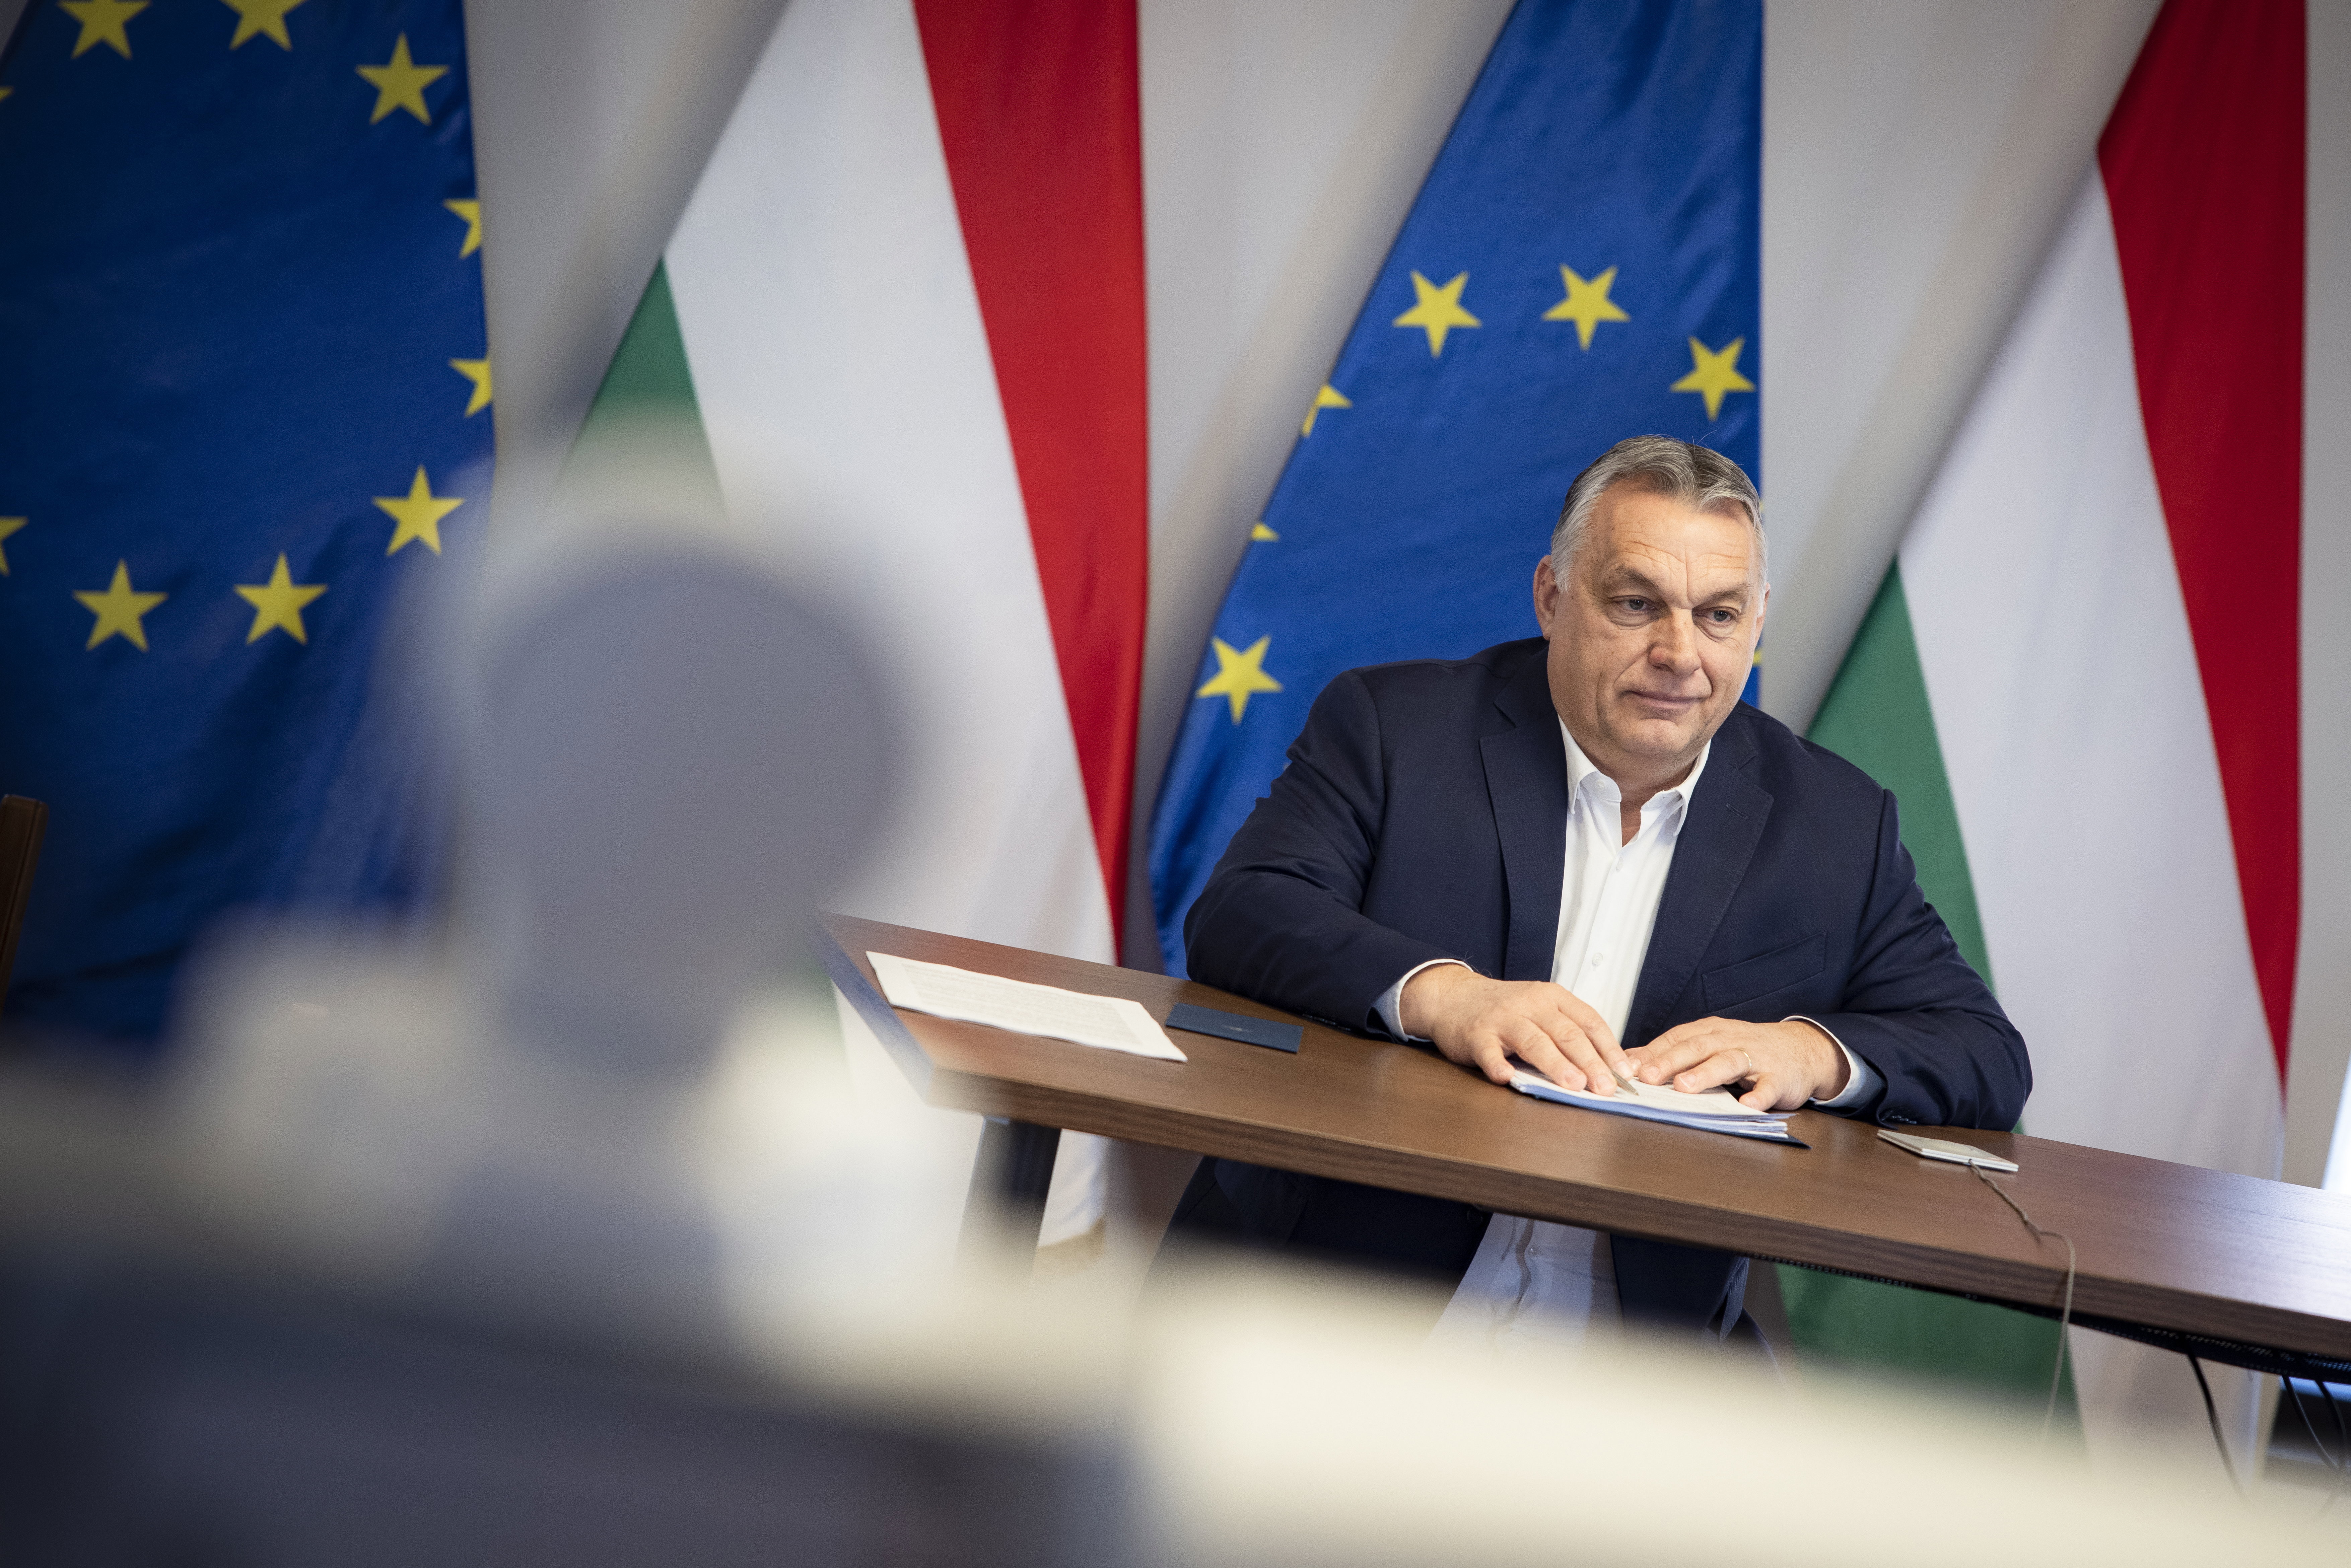 Megvan a dátum! Ekkor választhatják meg Orbán Viktort miniszterelnöknek ötödszörre